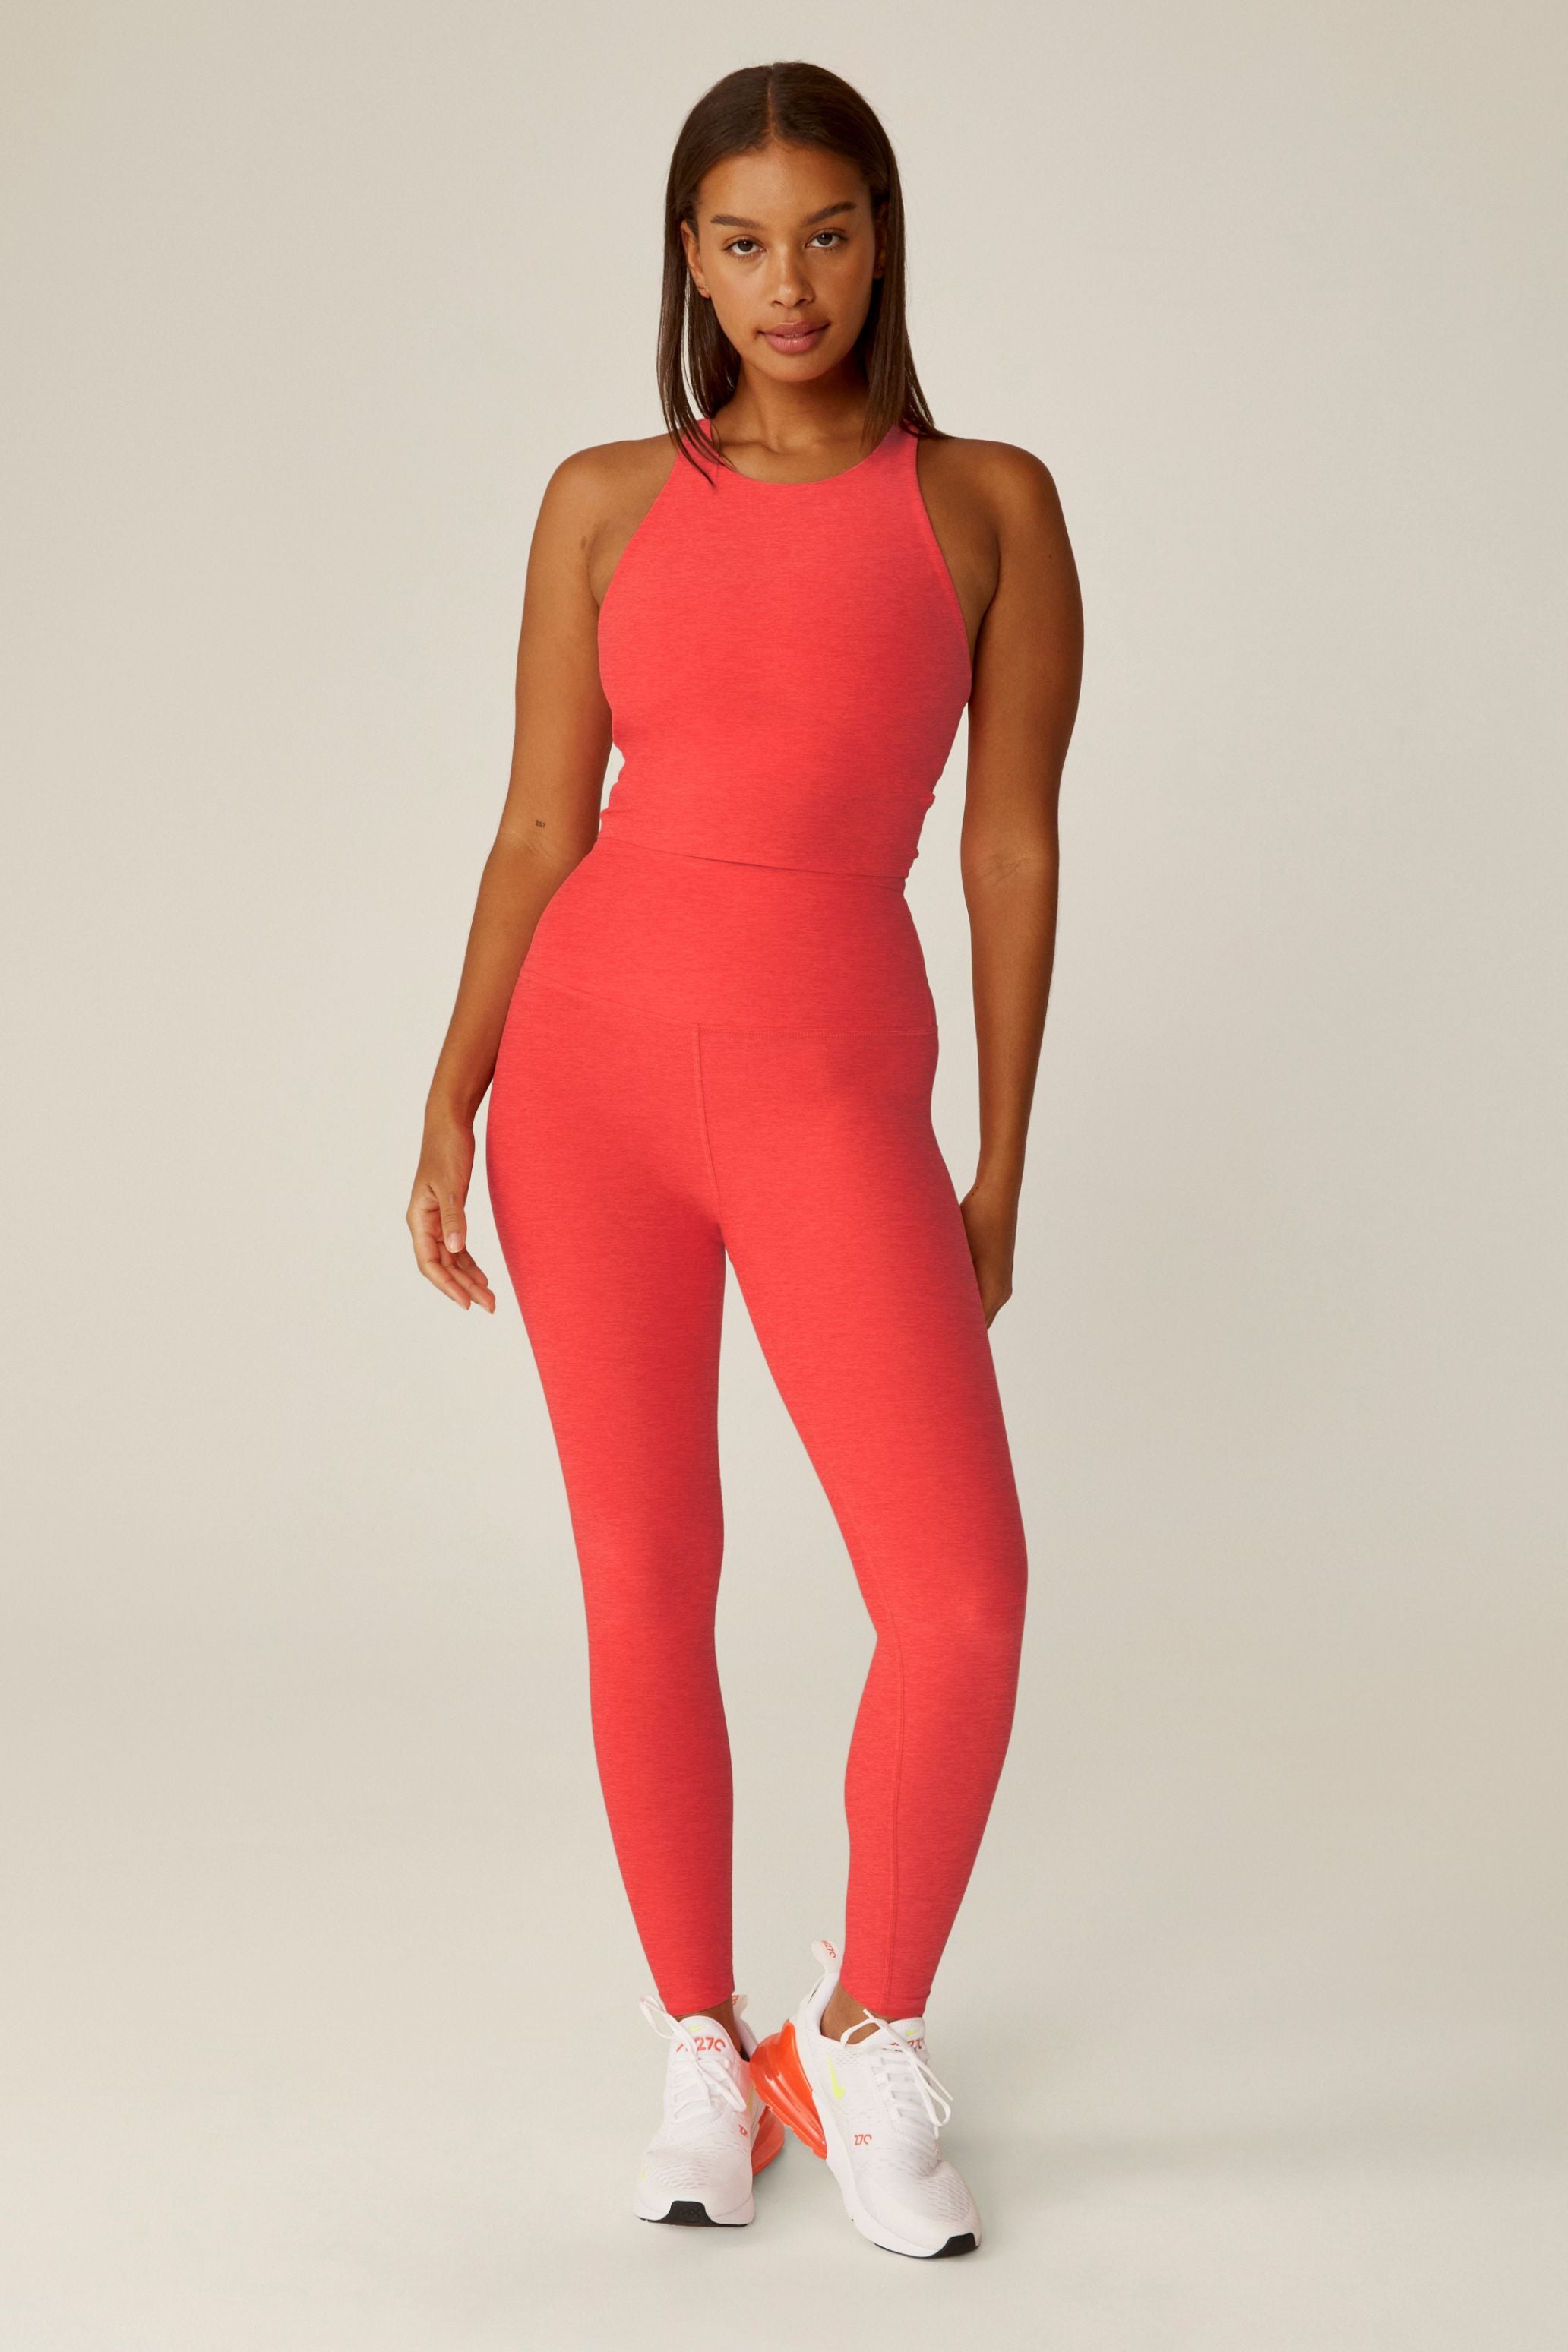 Shop leggings for women online